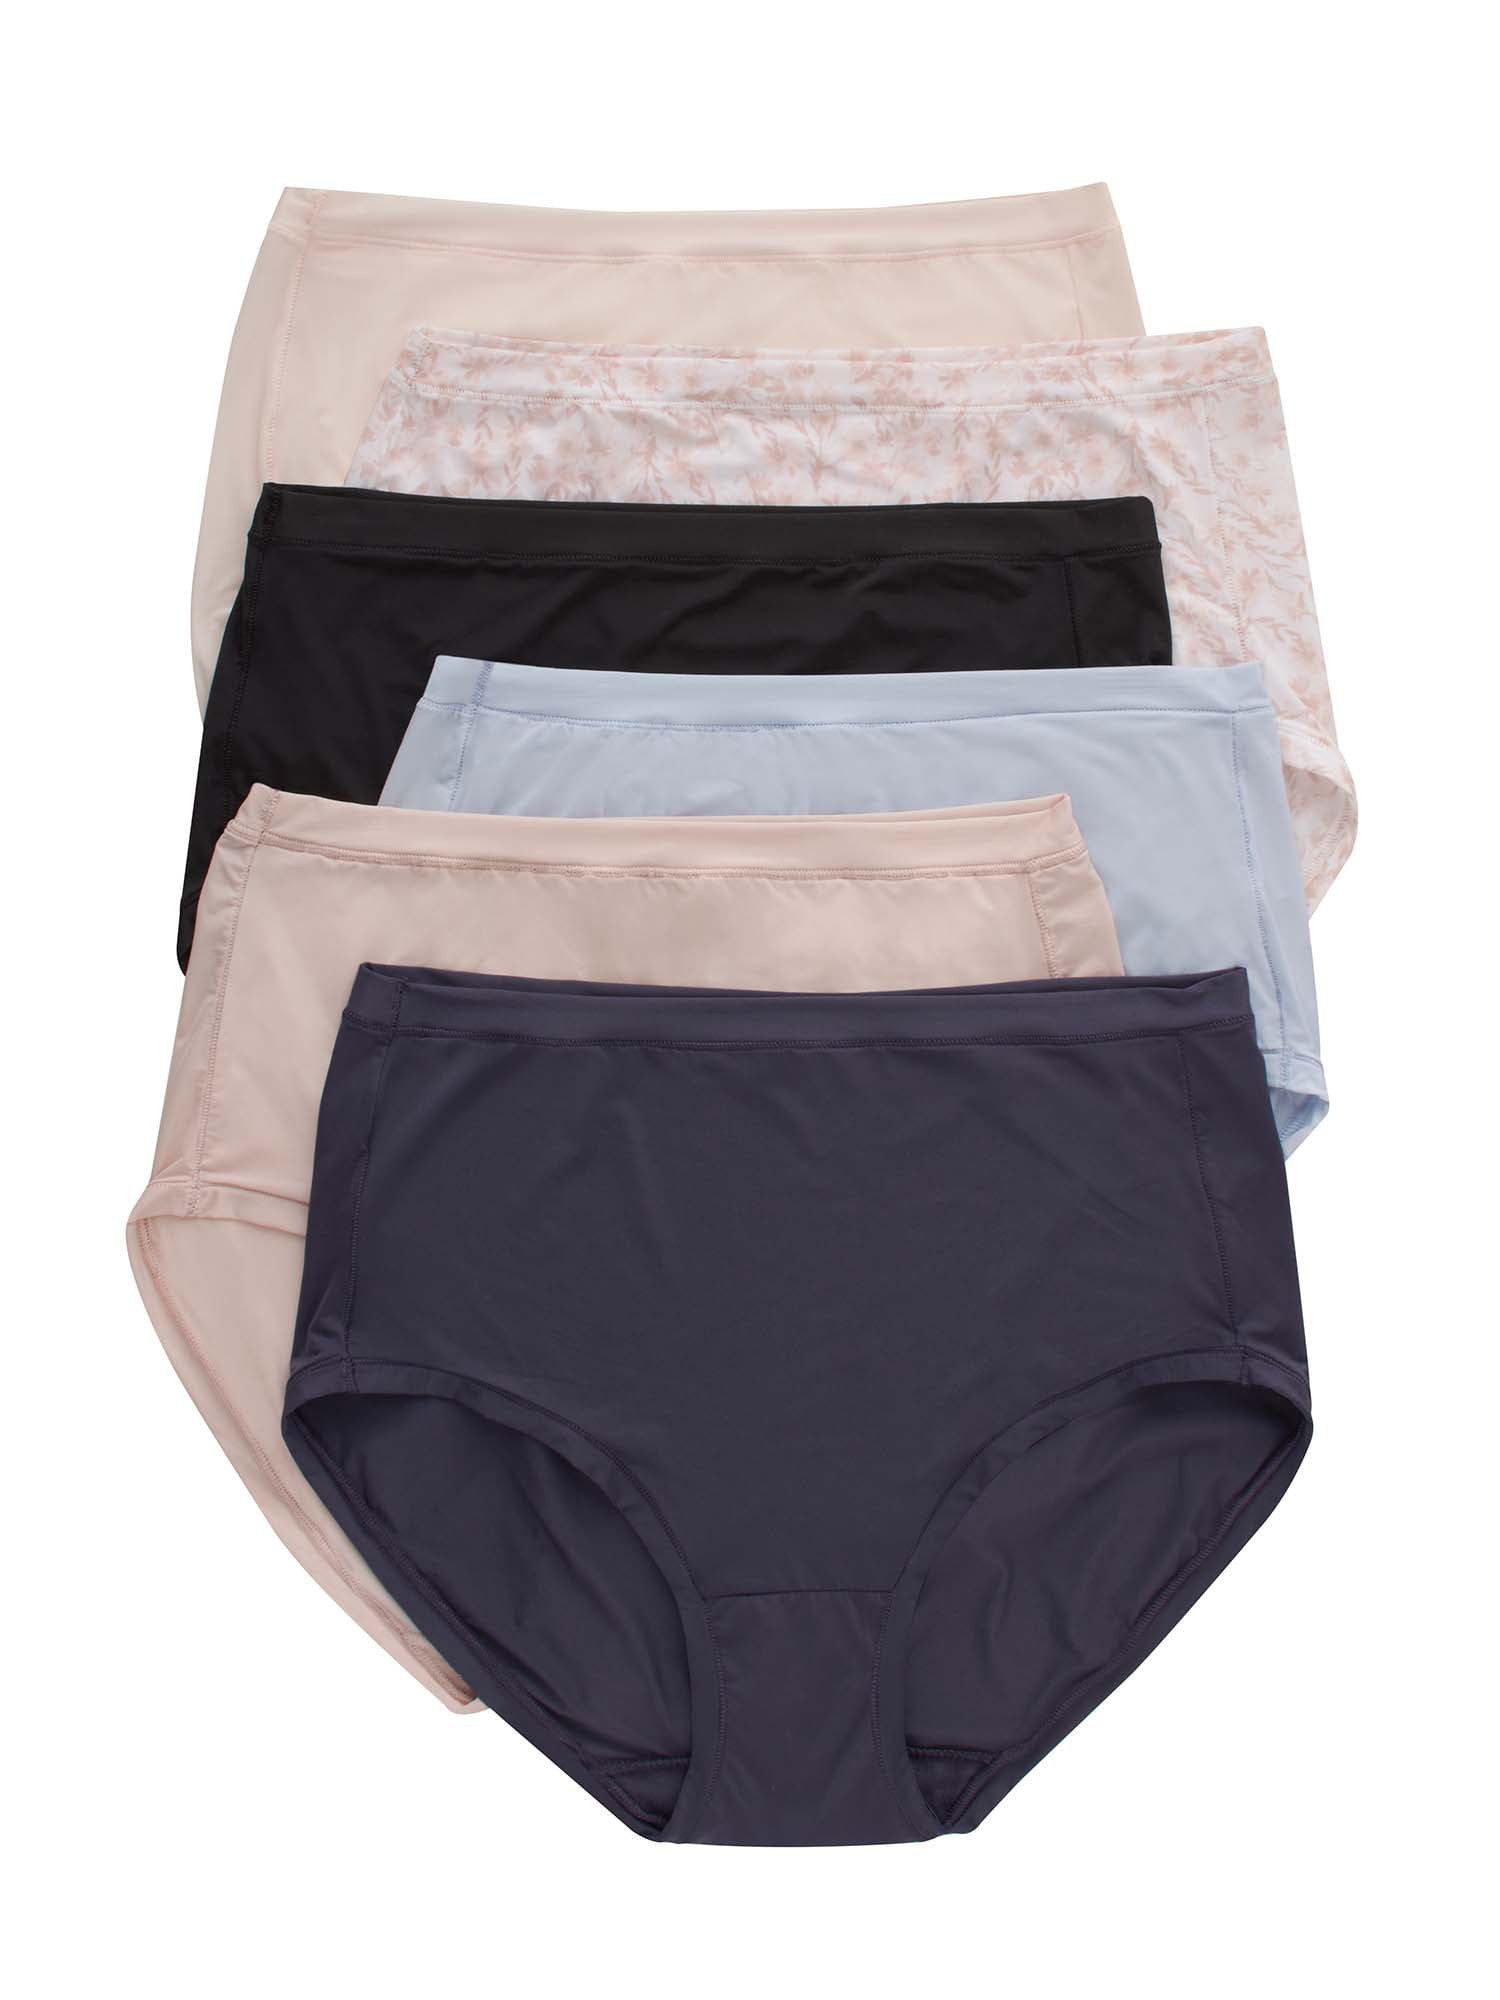 Mejores ofertas e historial de precios de Hanes Women's Comfort Flex Fit  Stretch Microfiber Modern Brief Underwear, 6-Pack en